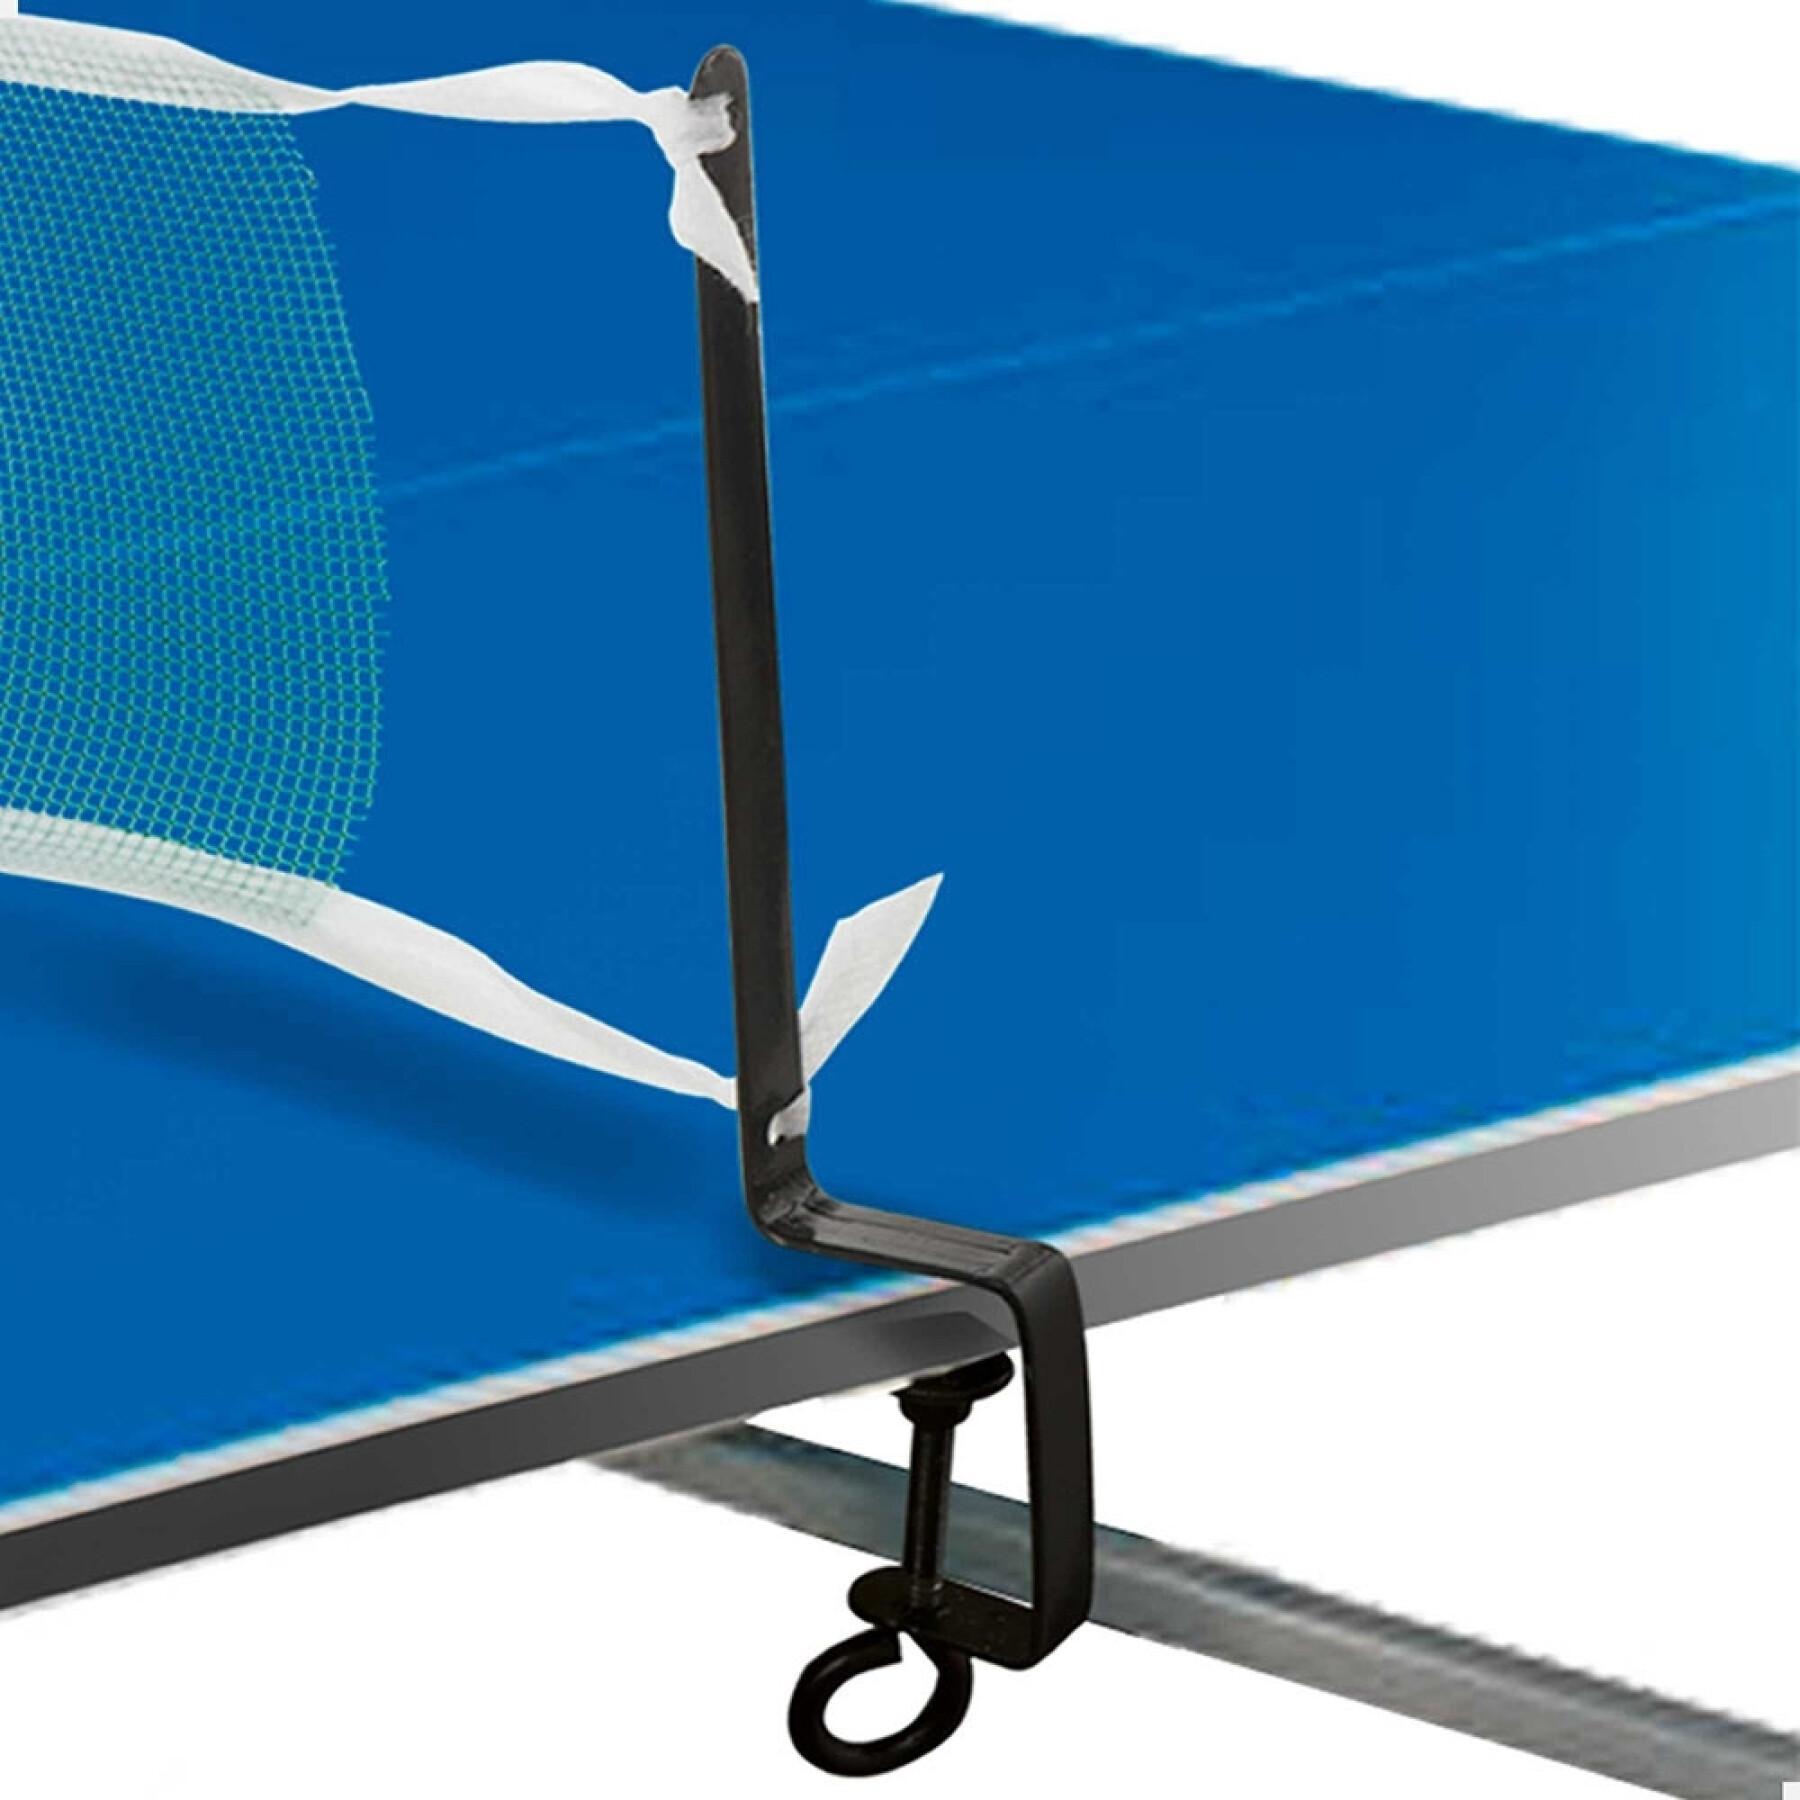 Jeu de ping-pong avec filet dans une mallette Aktive Sports